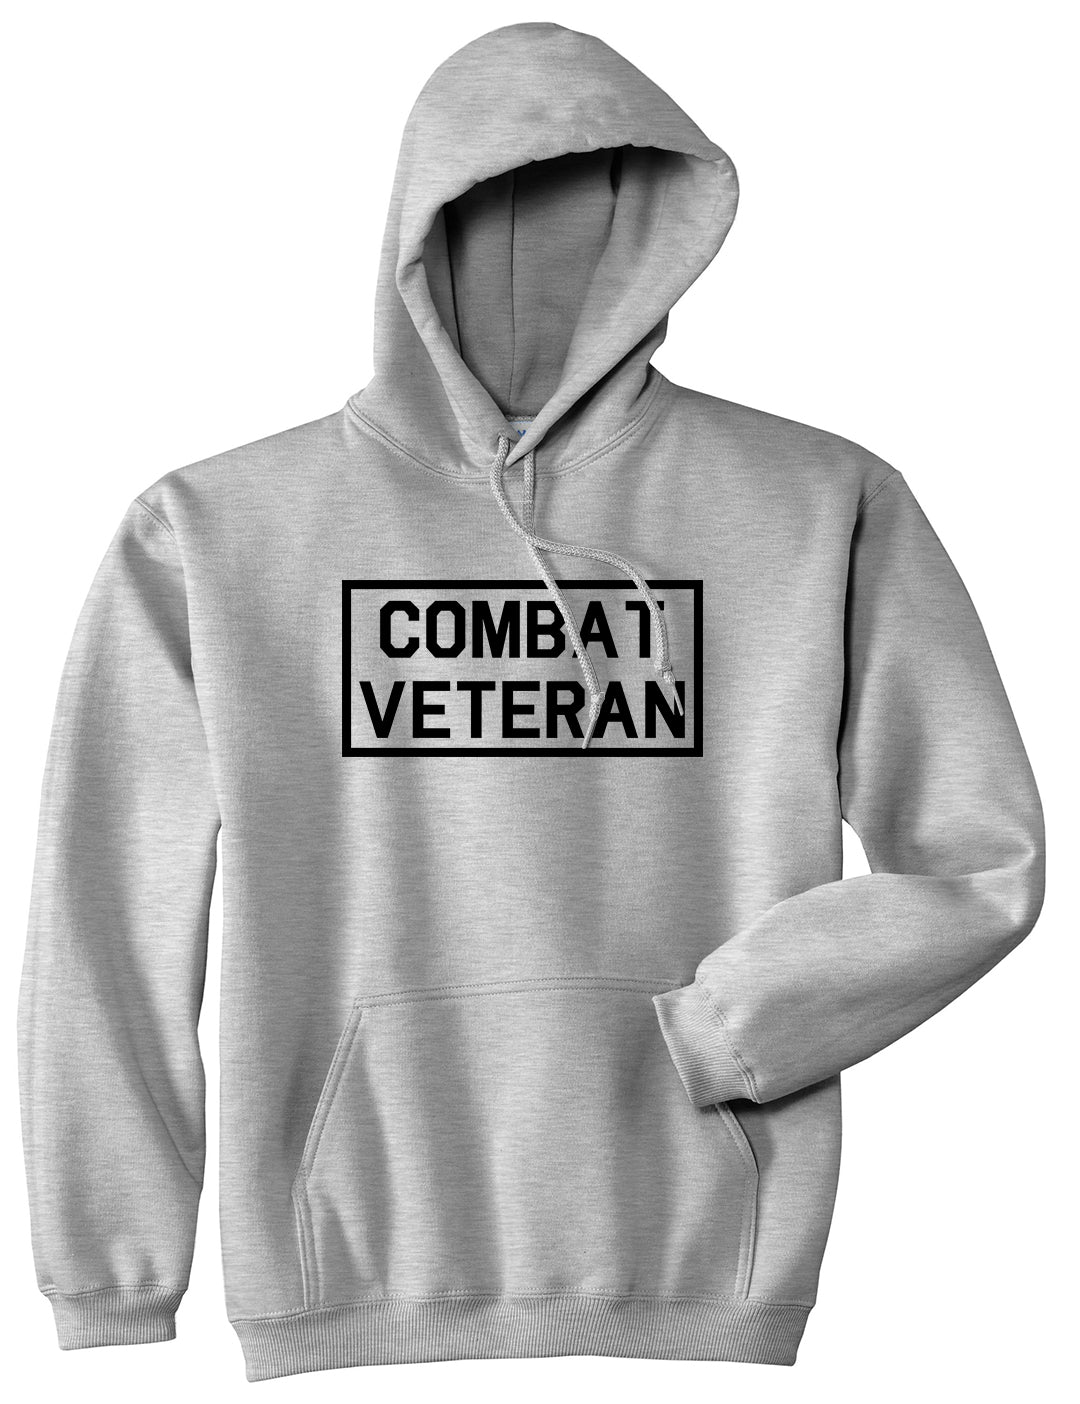 Combat Veteran Grey Pullover Hoodie by Kings Of NY